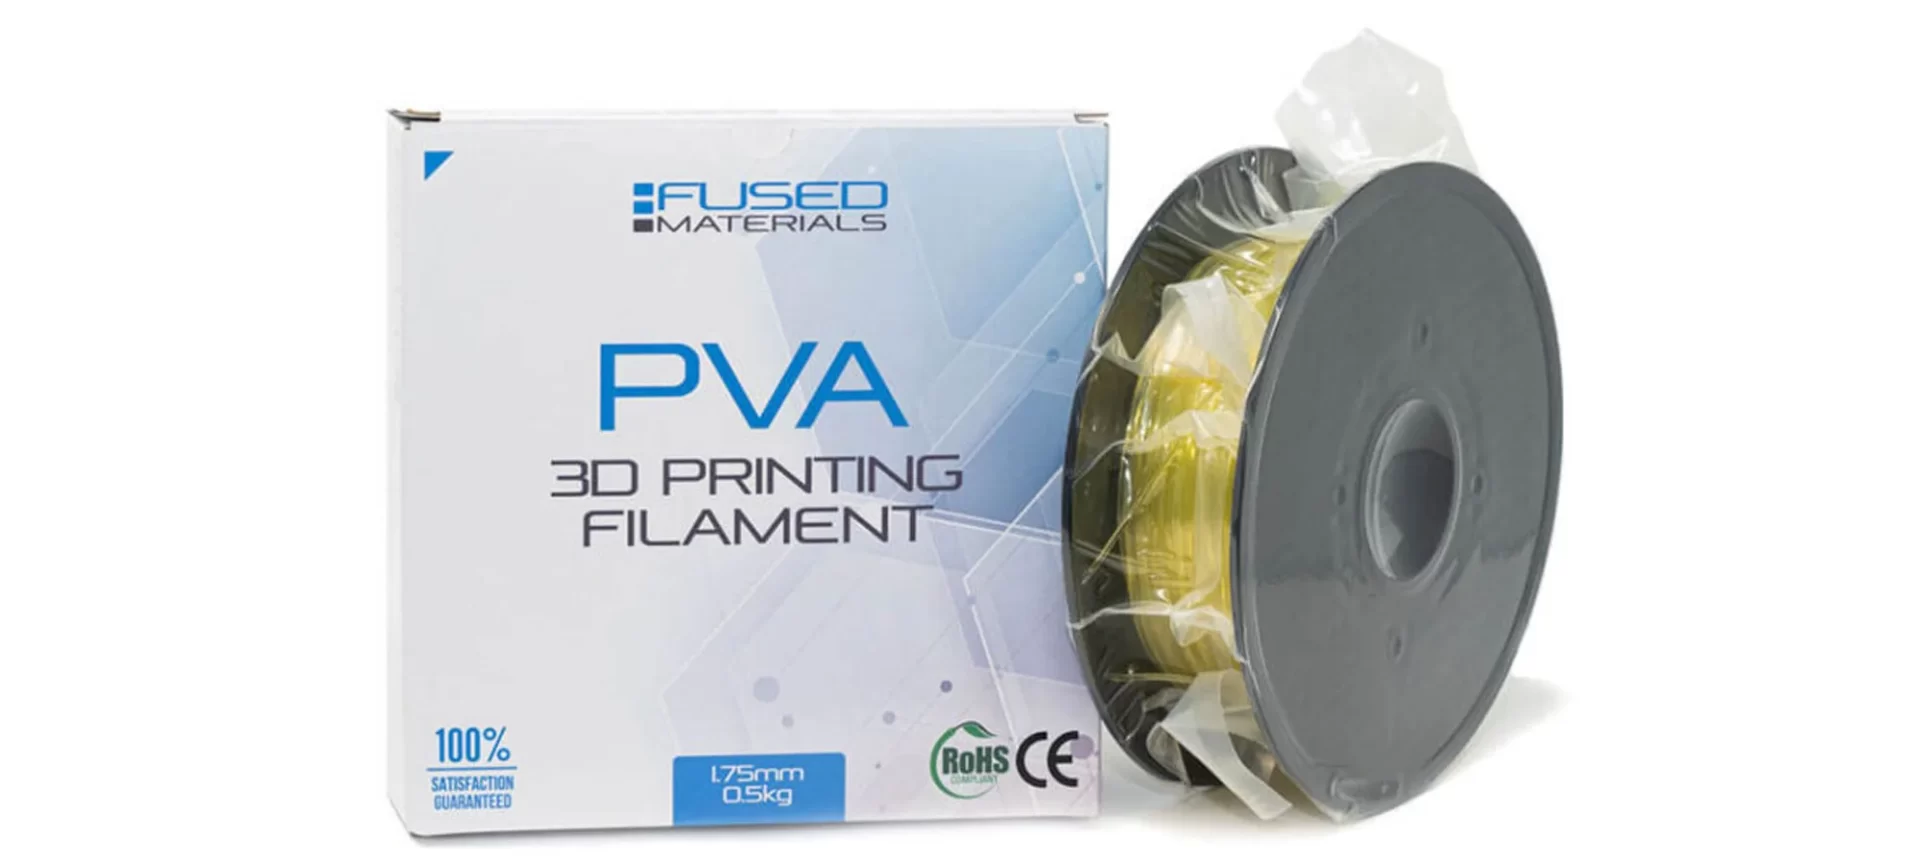 Fused Materials pva filament